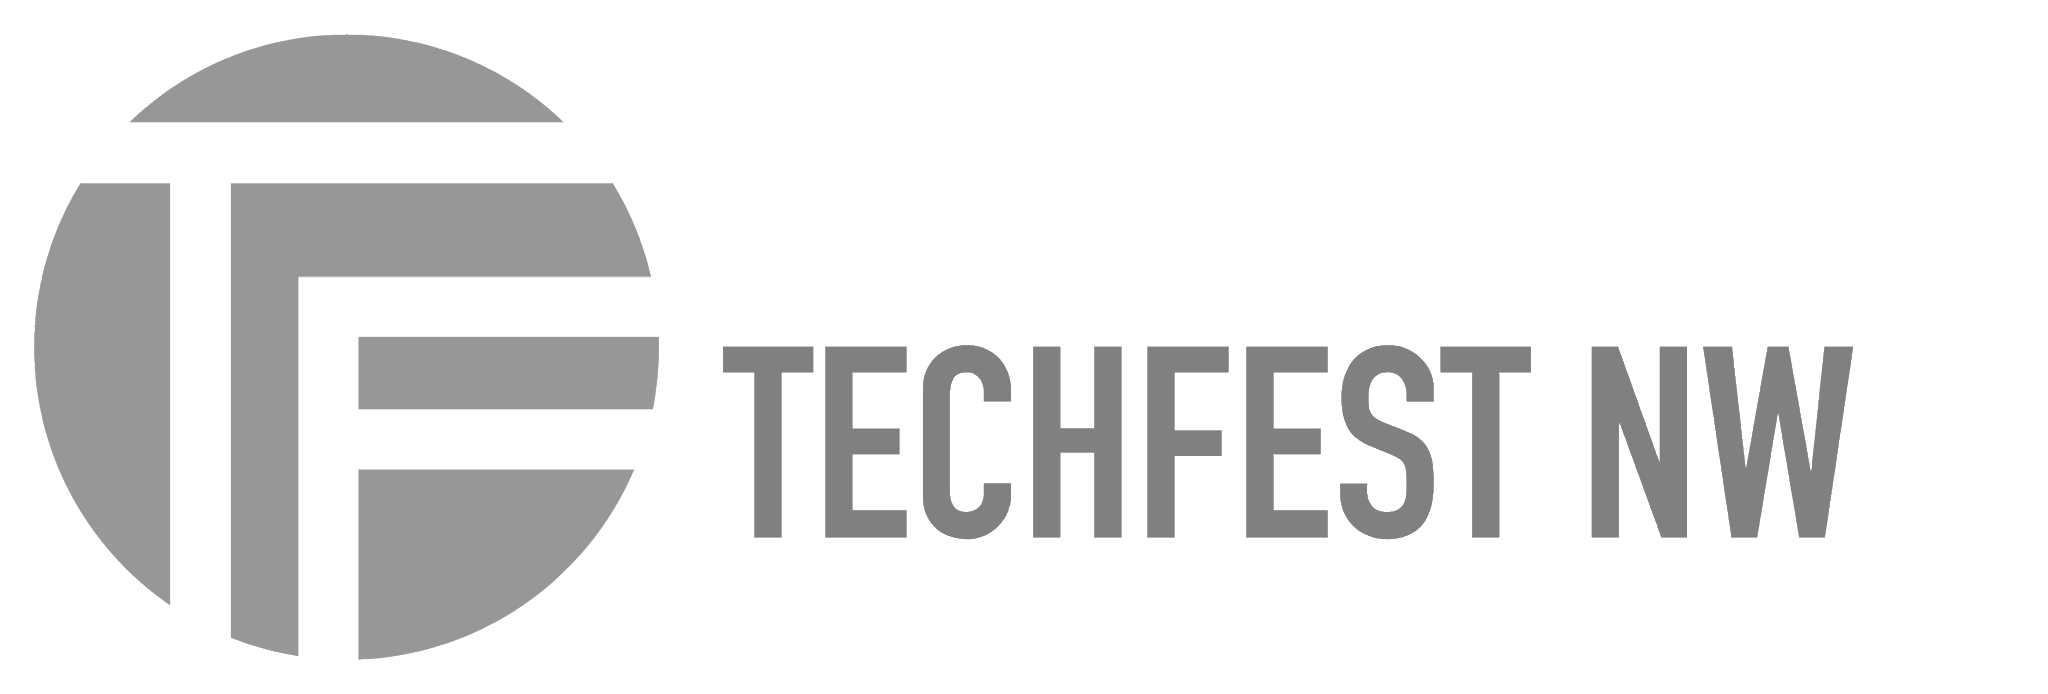 Techfest NW logo